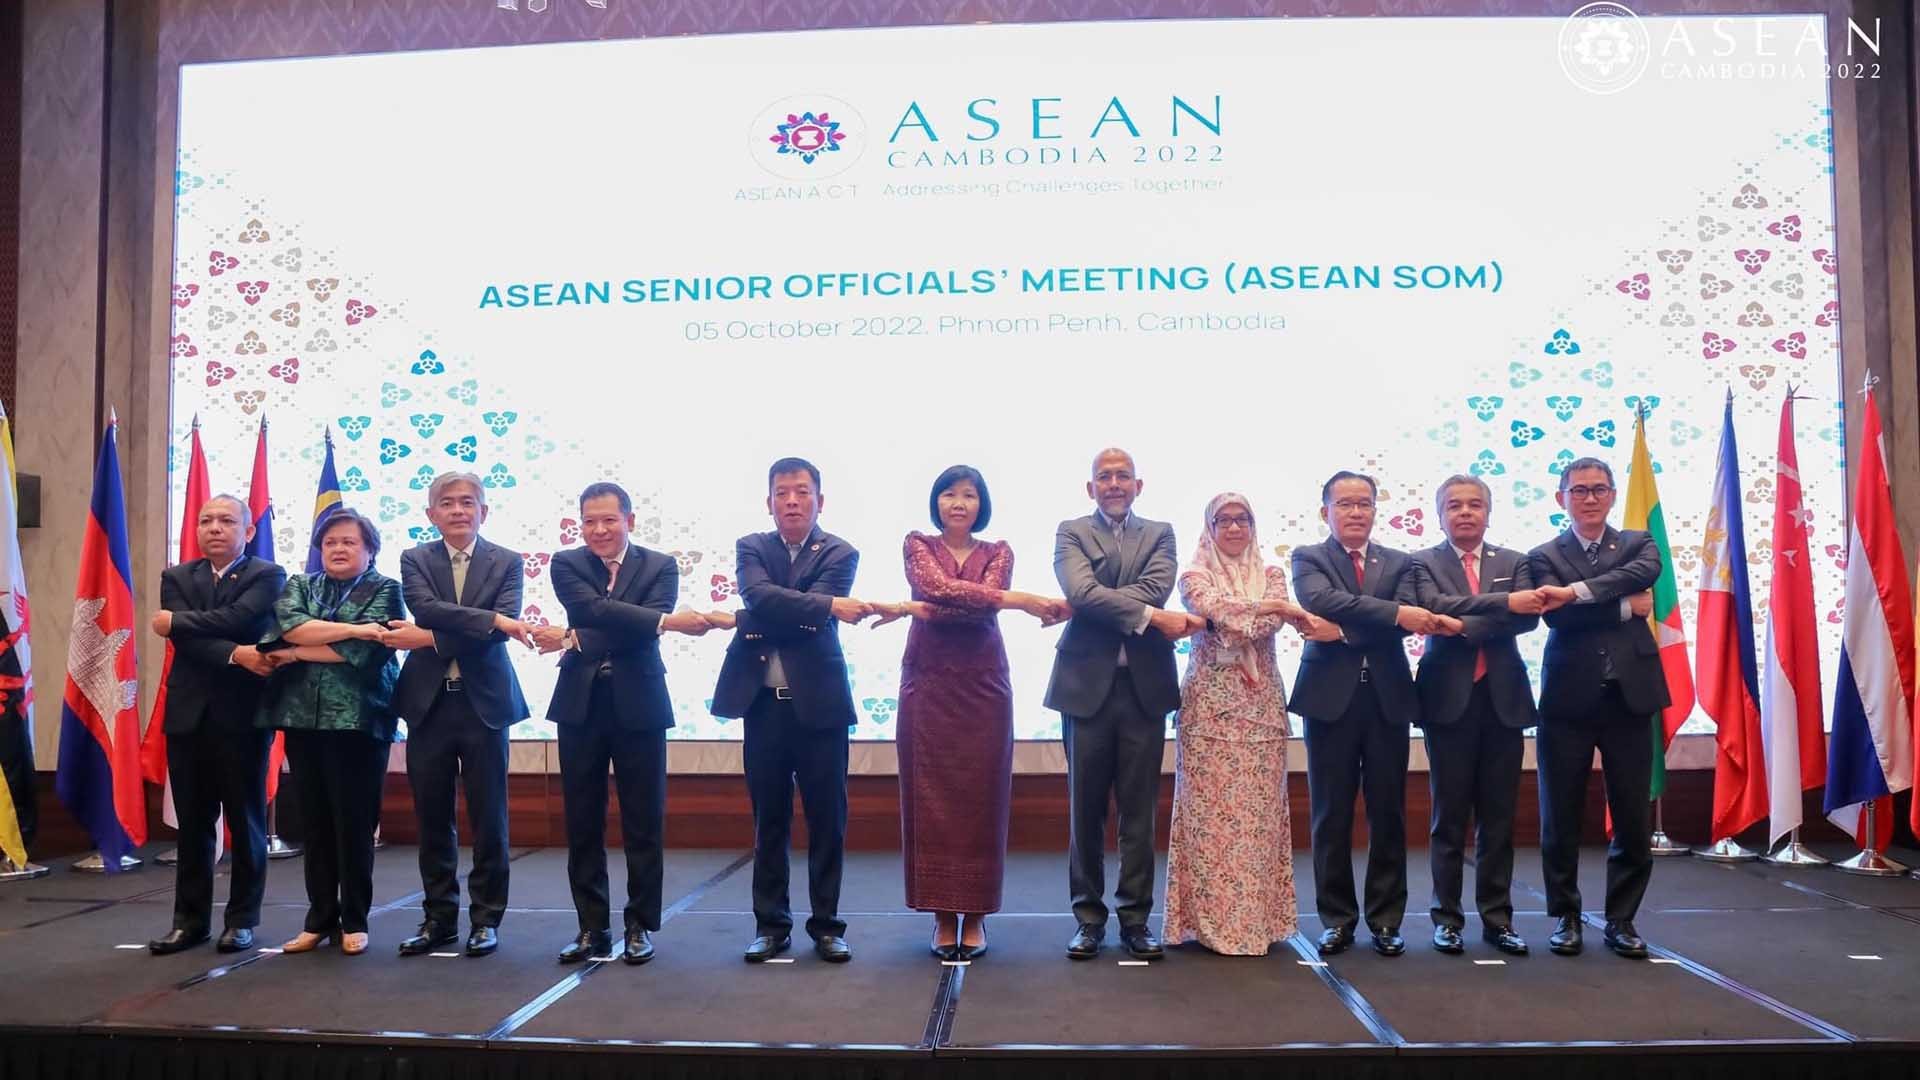 Đại sứ Vũ Hồ, Trưởng SOM ASEAN Việt Nam dẫn đầu, đã tham dự các cuộc họp Quan chức Cao cấp ASEAN.